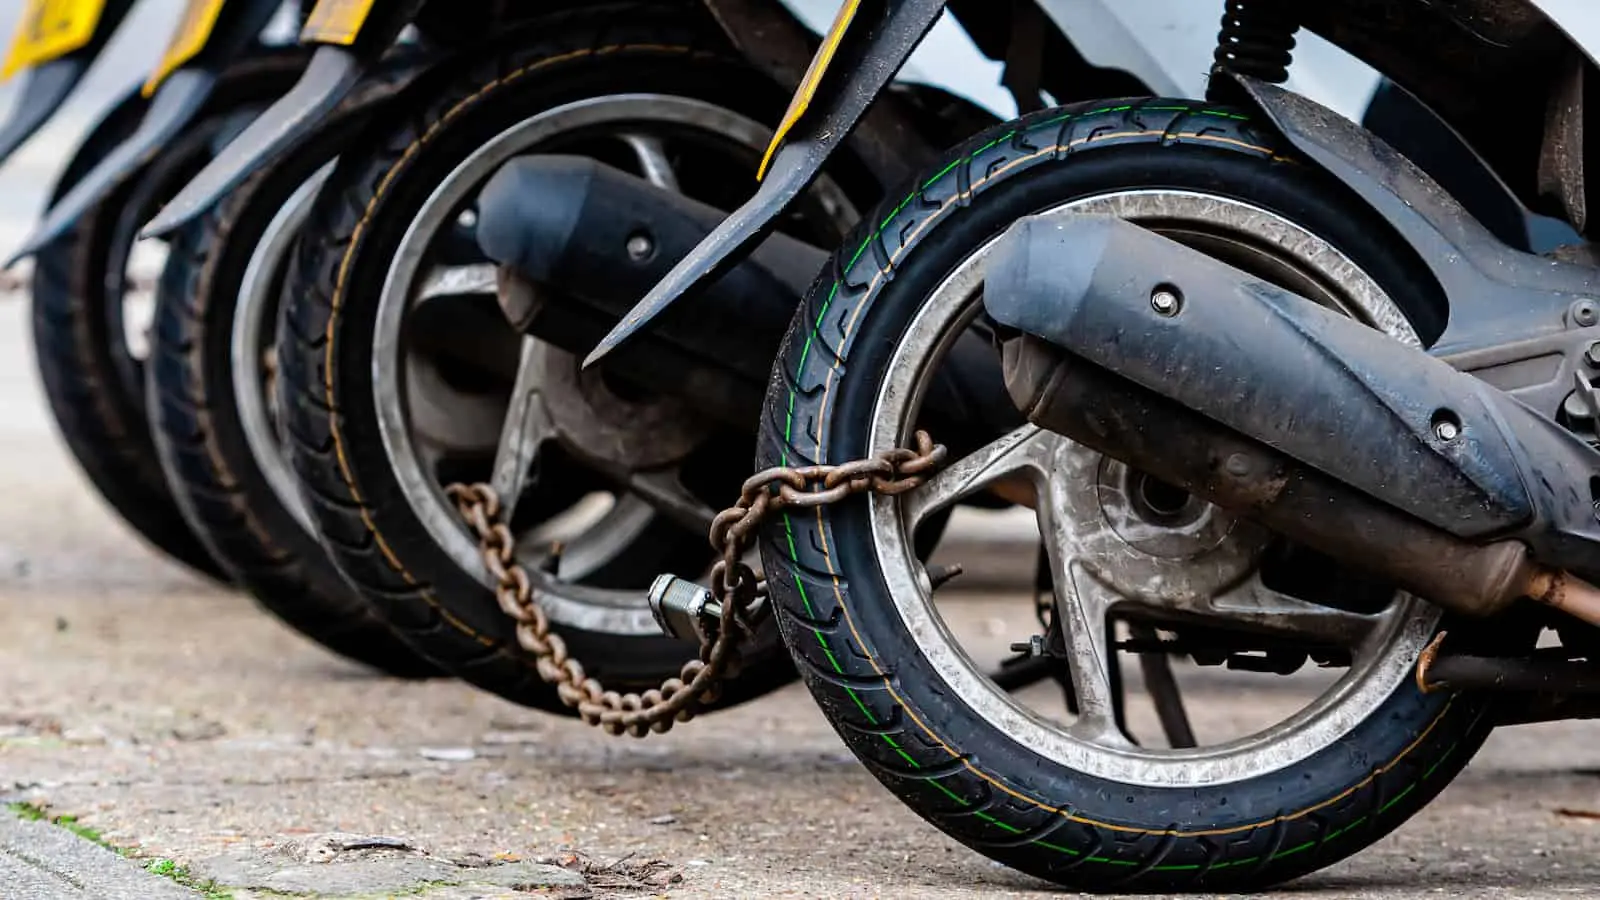 easy indemniza por robo de motocicleta - Qué pasa si me roban mi moto 0km